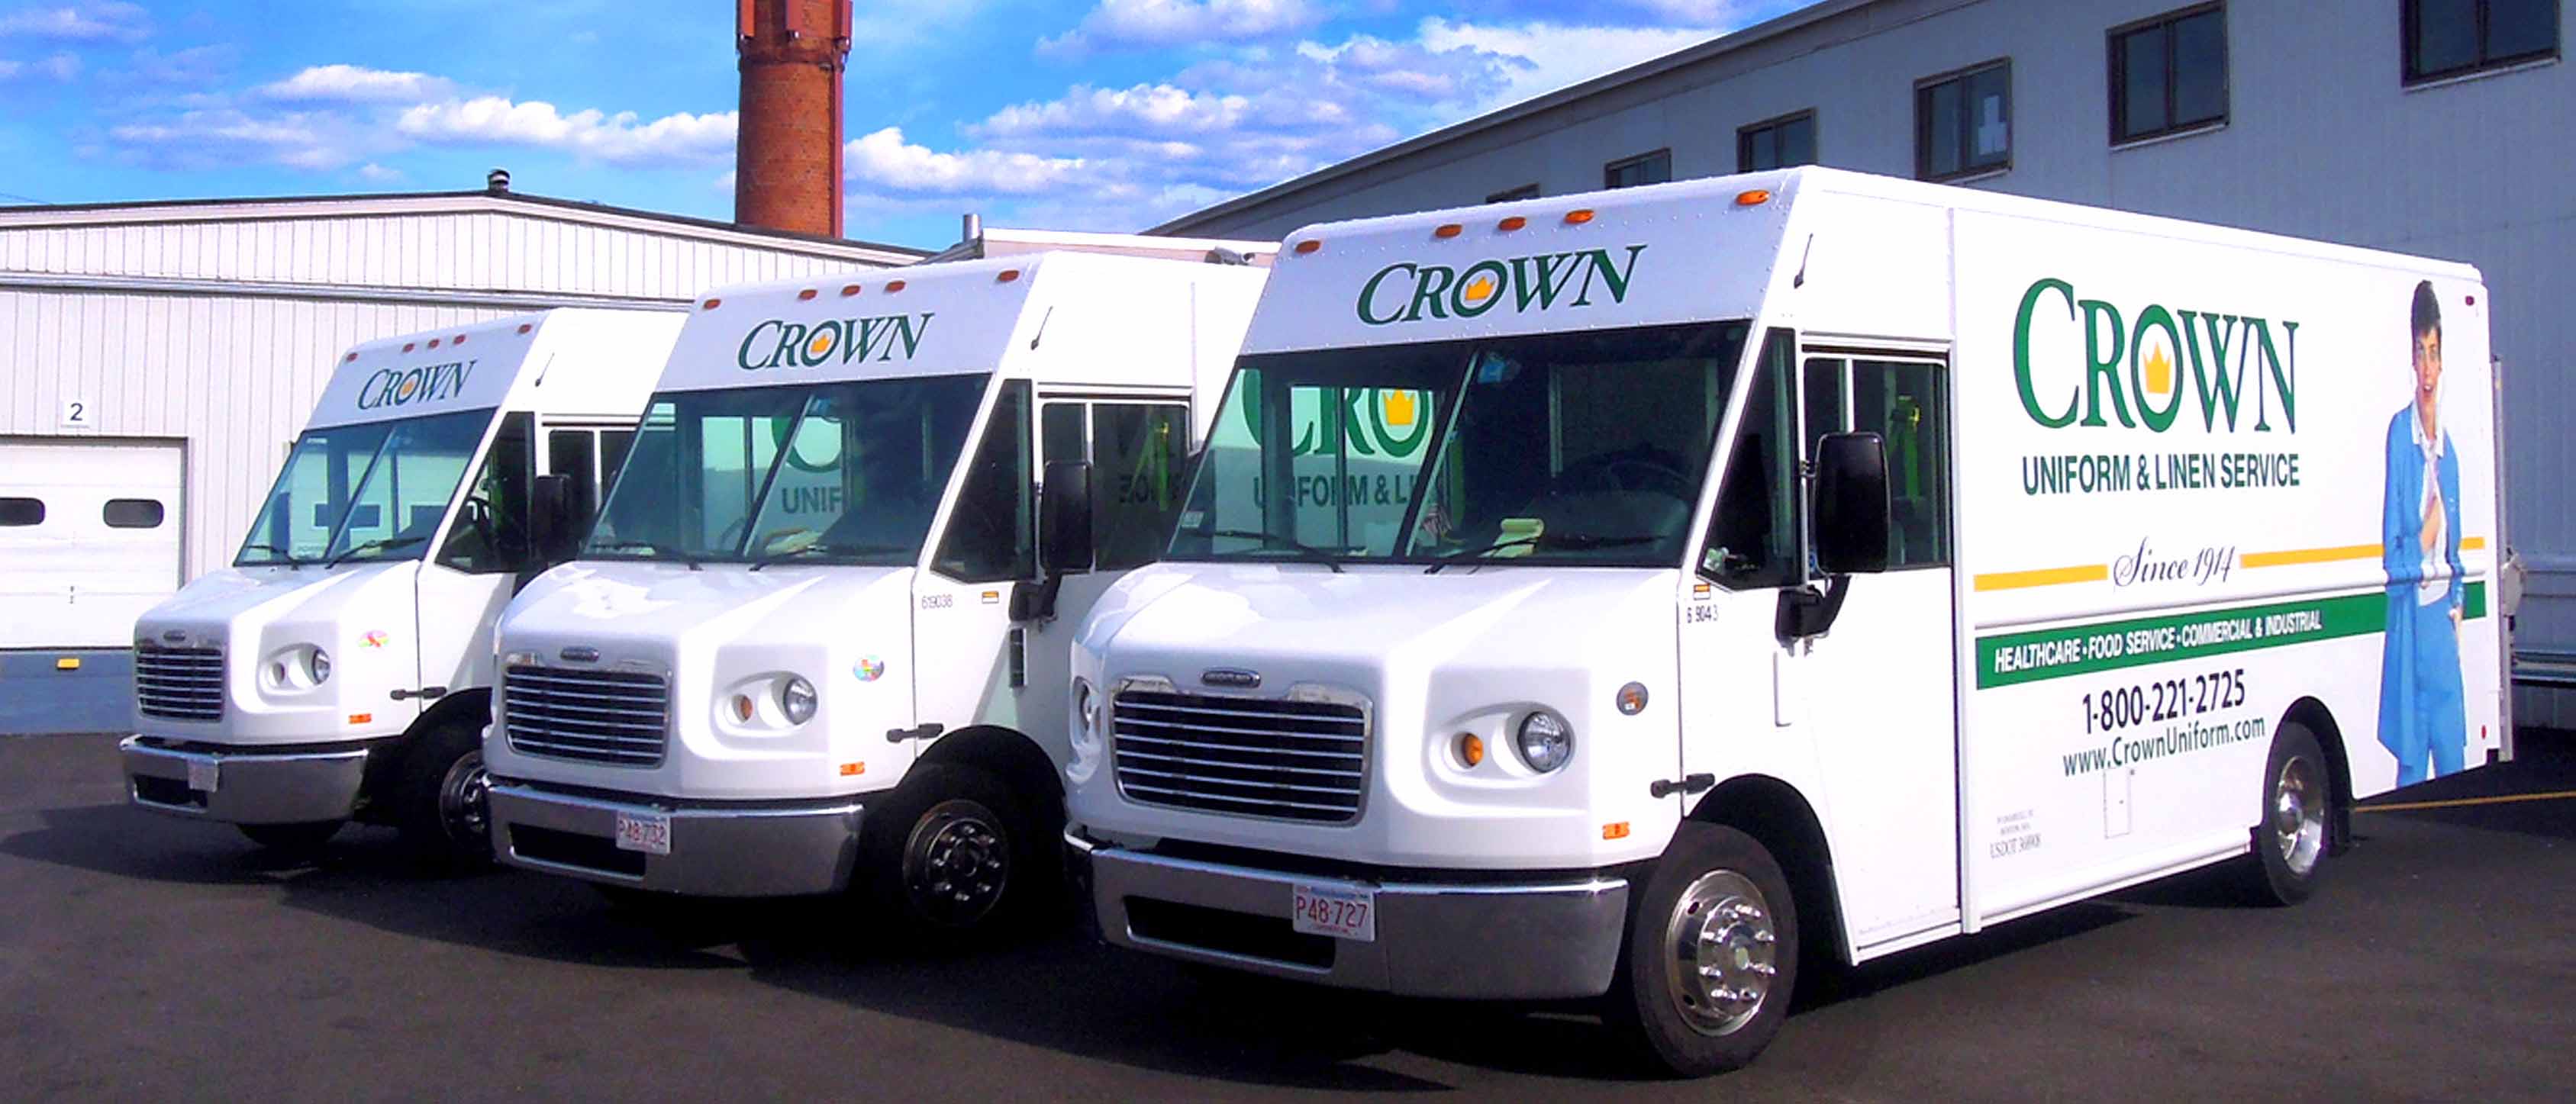 Three parked CROWN Uniform & Linen Service trucks